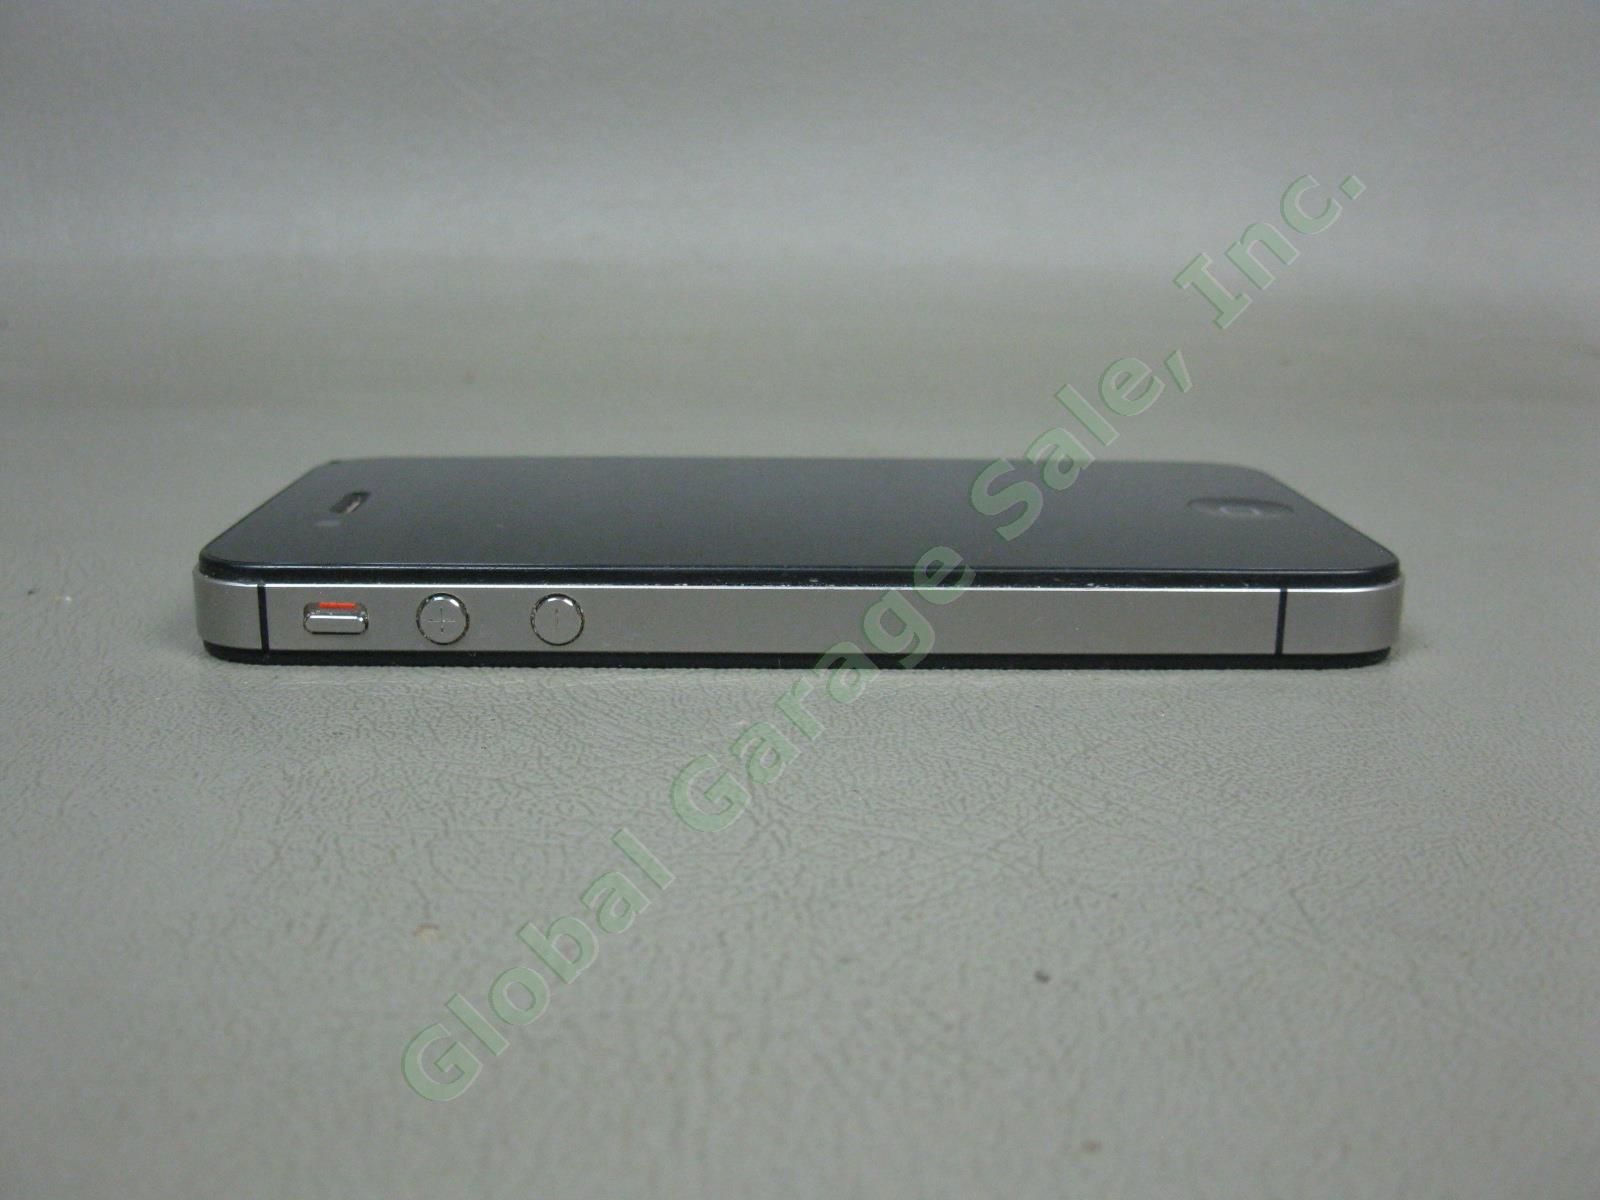 Apple iPhone 4s 16GB Black Model A1387 MD276LL/A Verizon Unlocked + Reset NO RES 4